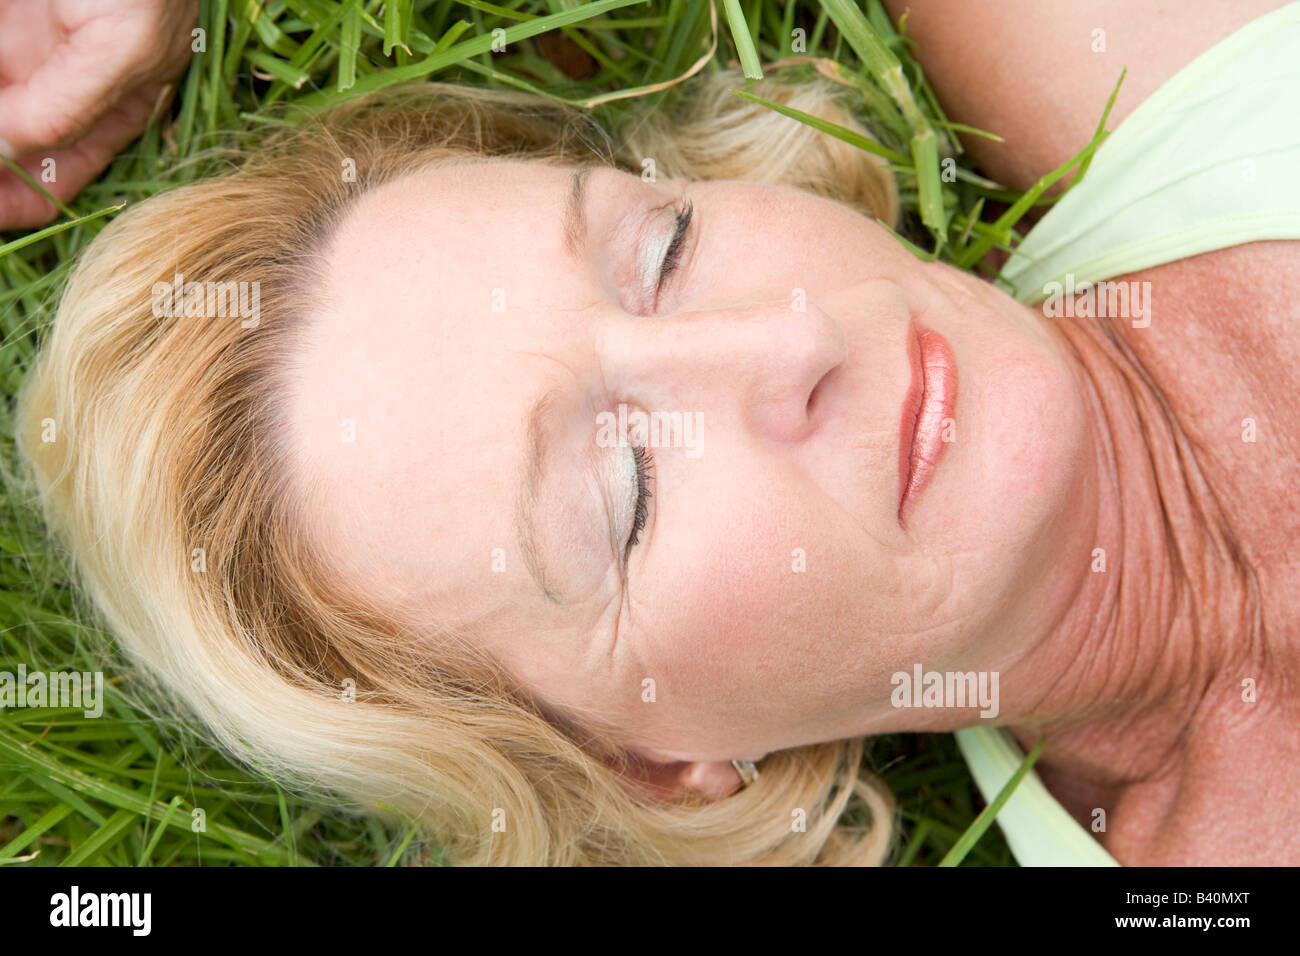 Спящие пьяные зрелые женщины. Взрослая женщина лежит на траве. Пожилая женщина лежит на траве. Взрослые женщины лежа.